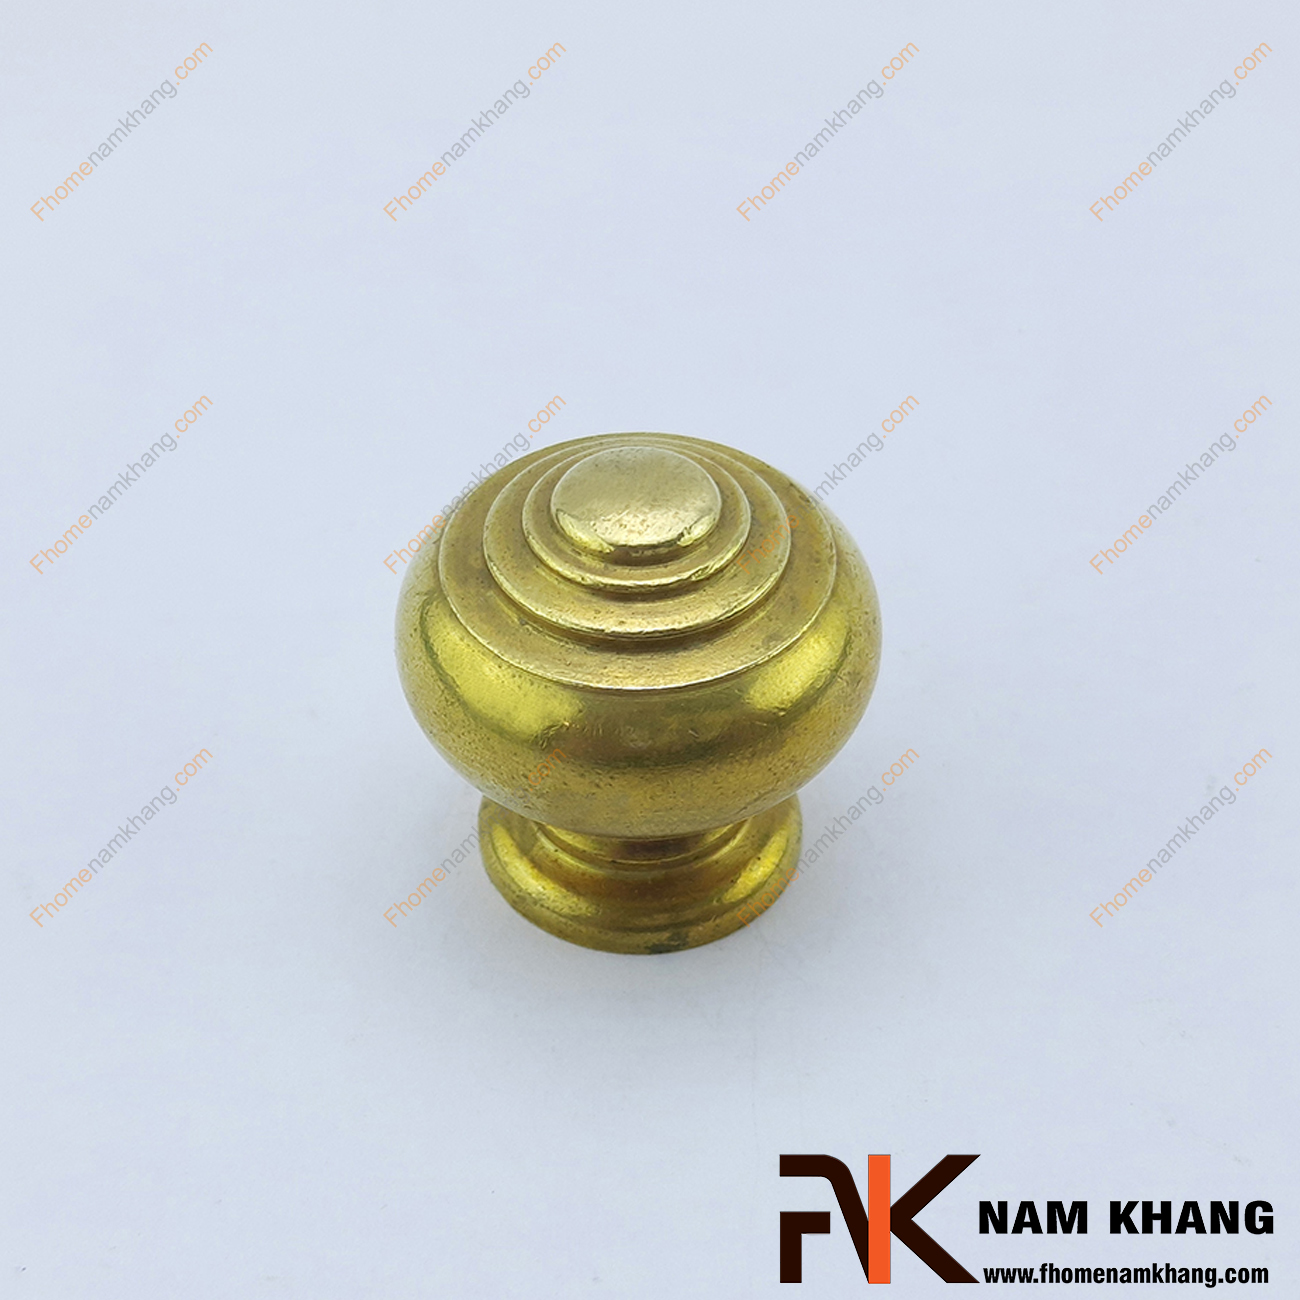 Núm nắm tủ đồng đầu tròn NKD047 có biên dạng cầu tròn, đây là một dạng tay nắm tủ đồng vàng tượng trưng cho sự tròn đầy, tượng trưng cho tài lộc và sự sung túc. 